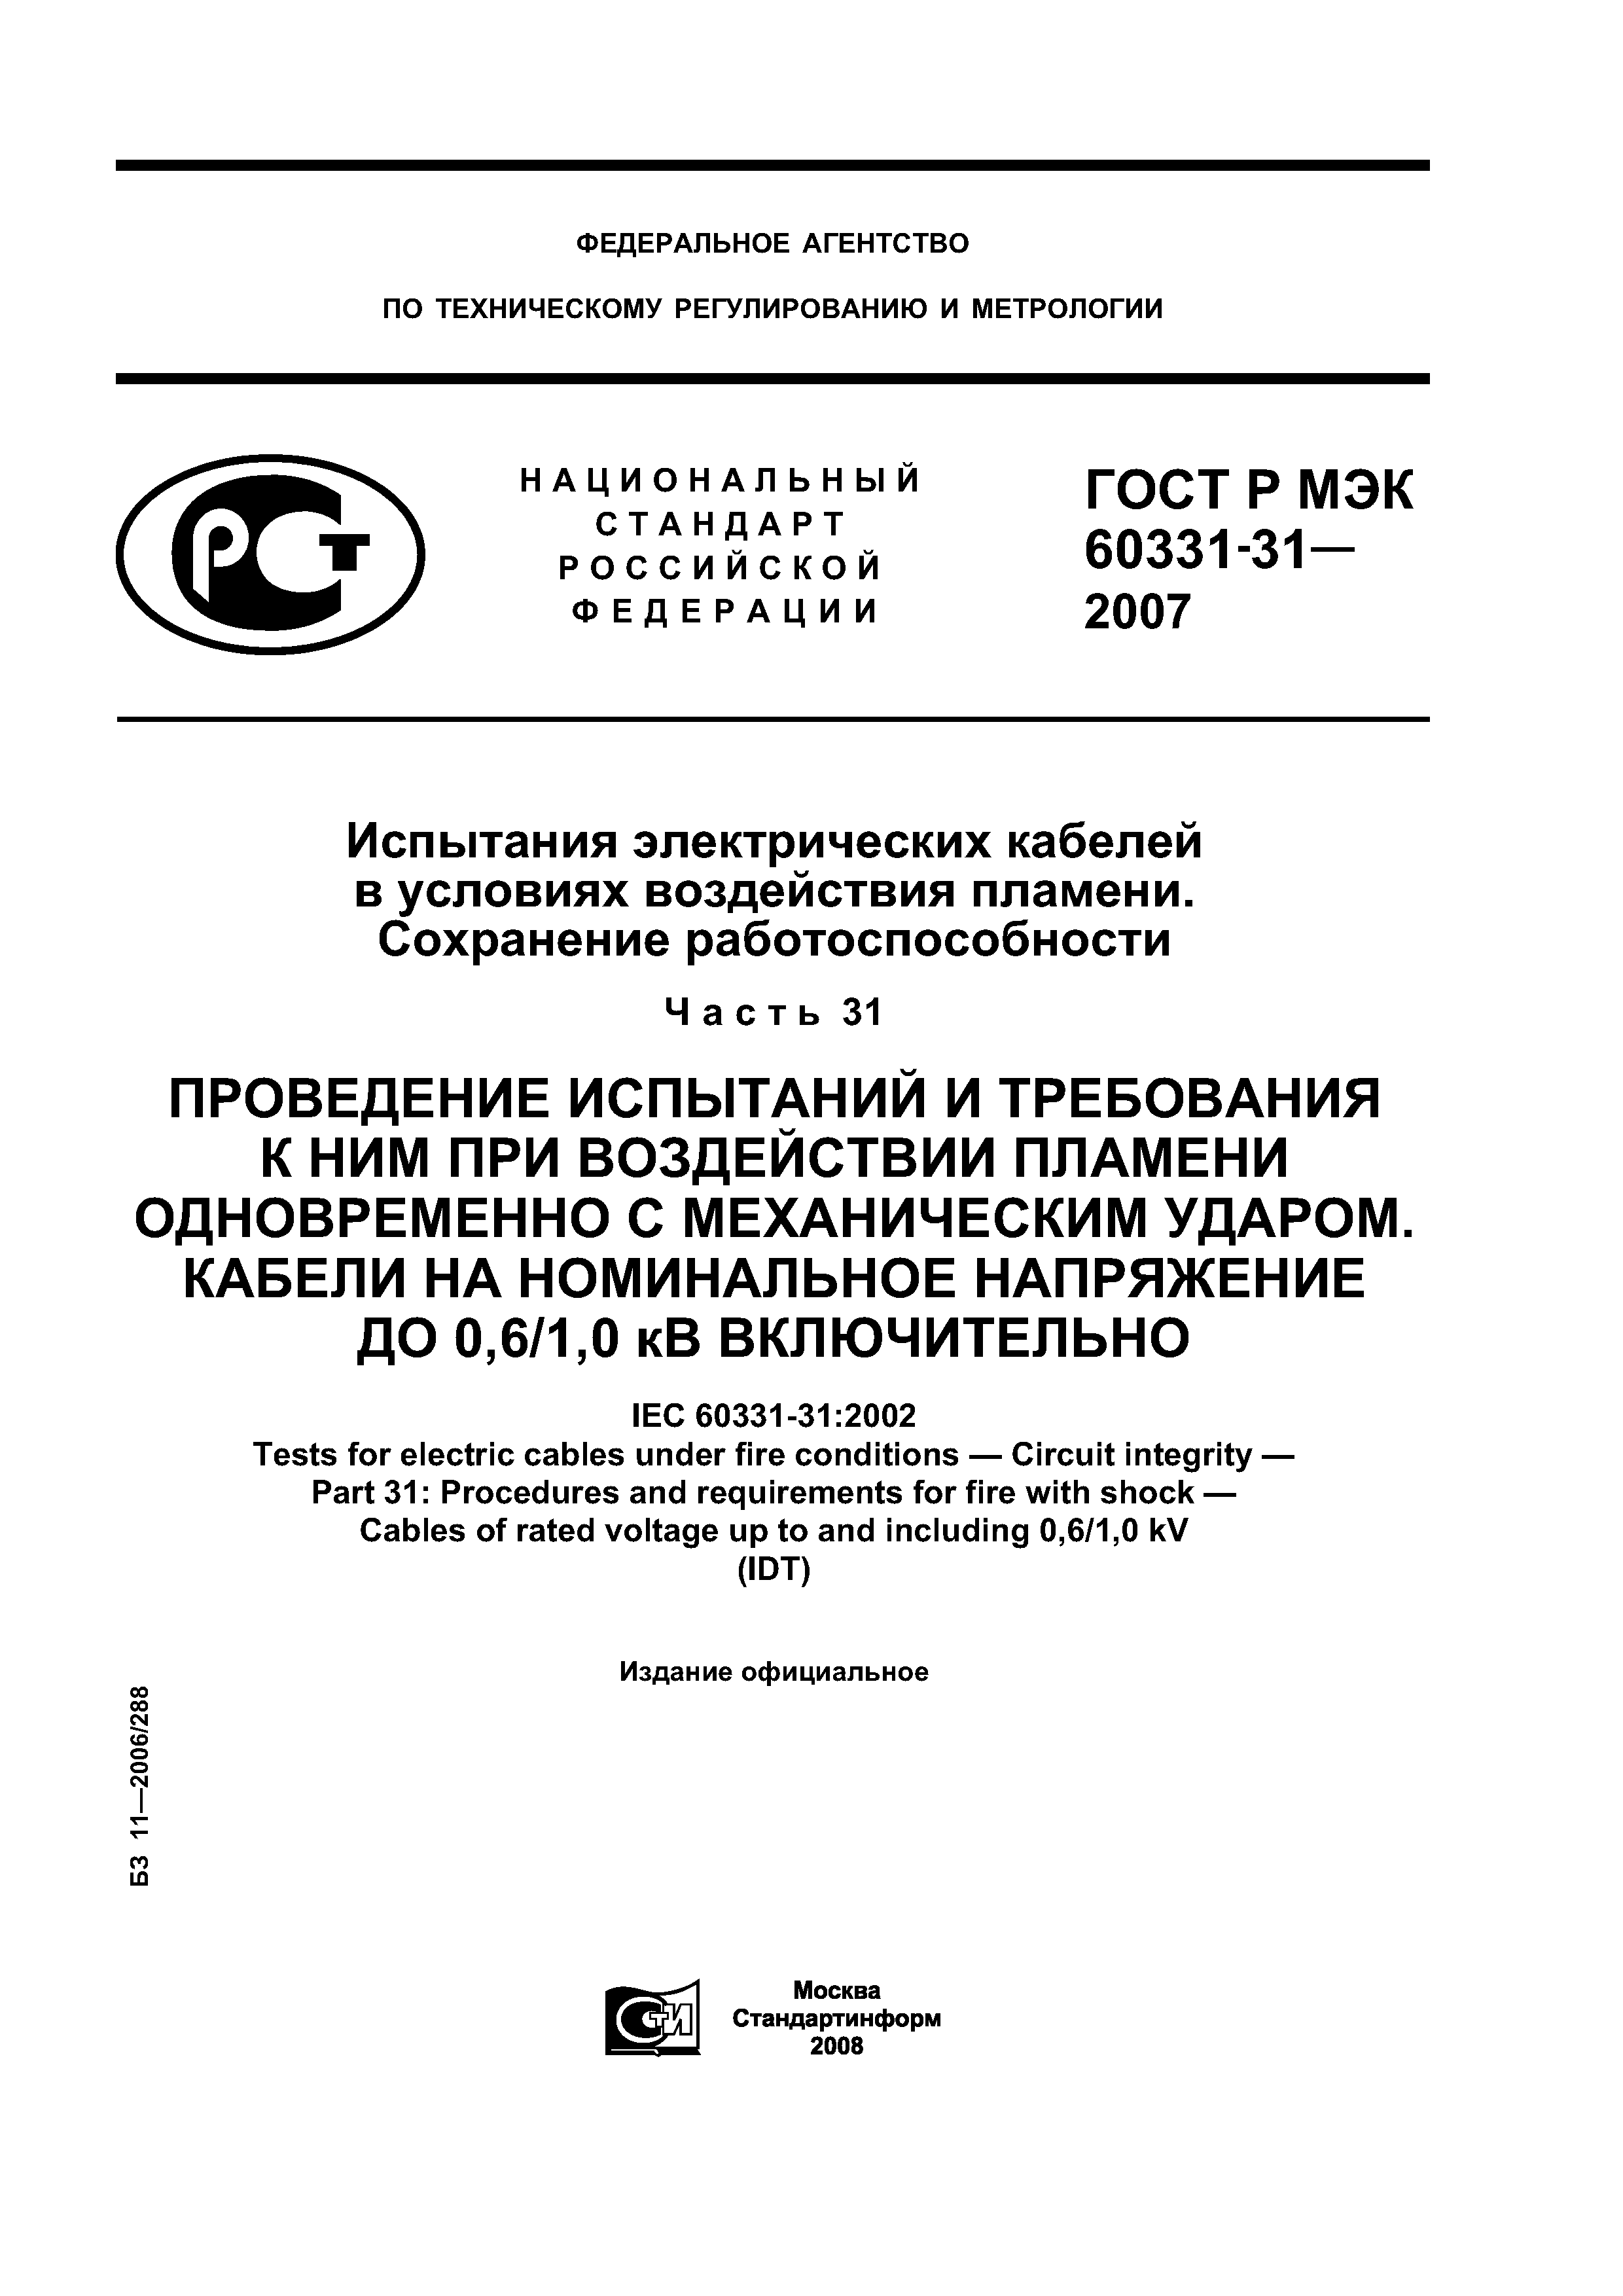 ГОСТ Р МЭК 60331-31-2007